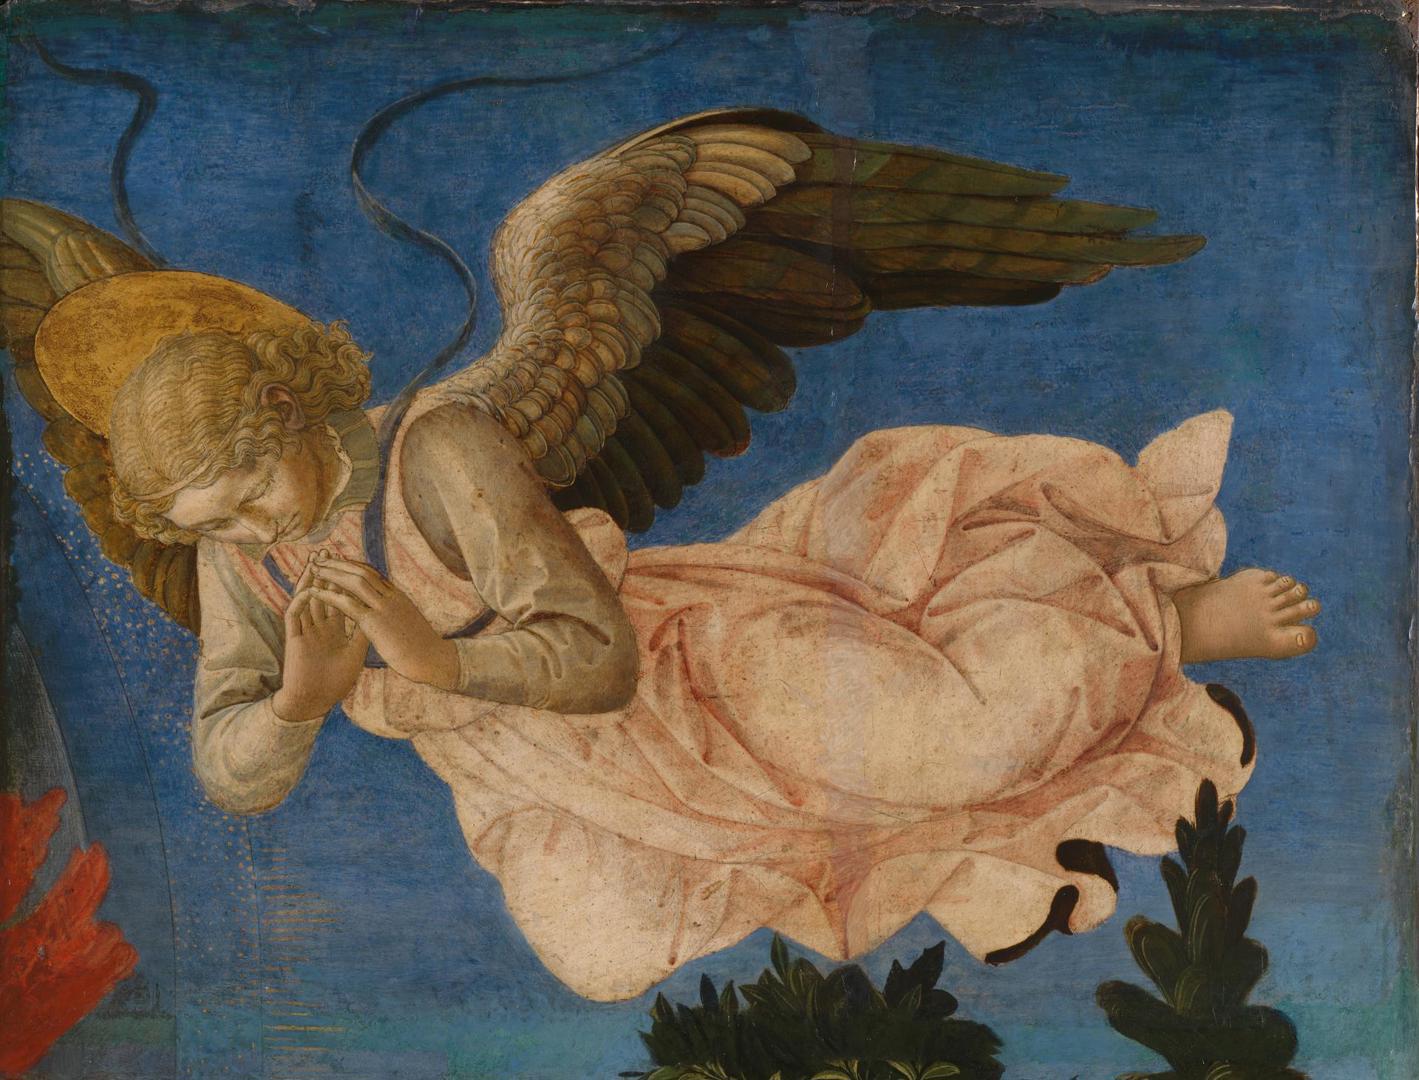 Angel (Right Hand) by Francesco Pesellino, Fra Filippo Lippi and workshop of Fra Filippo Lippi